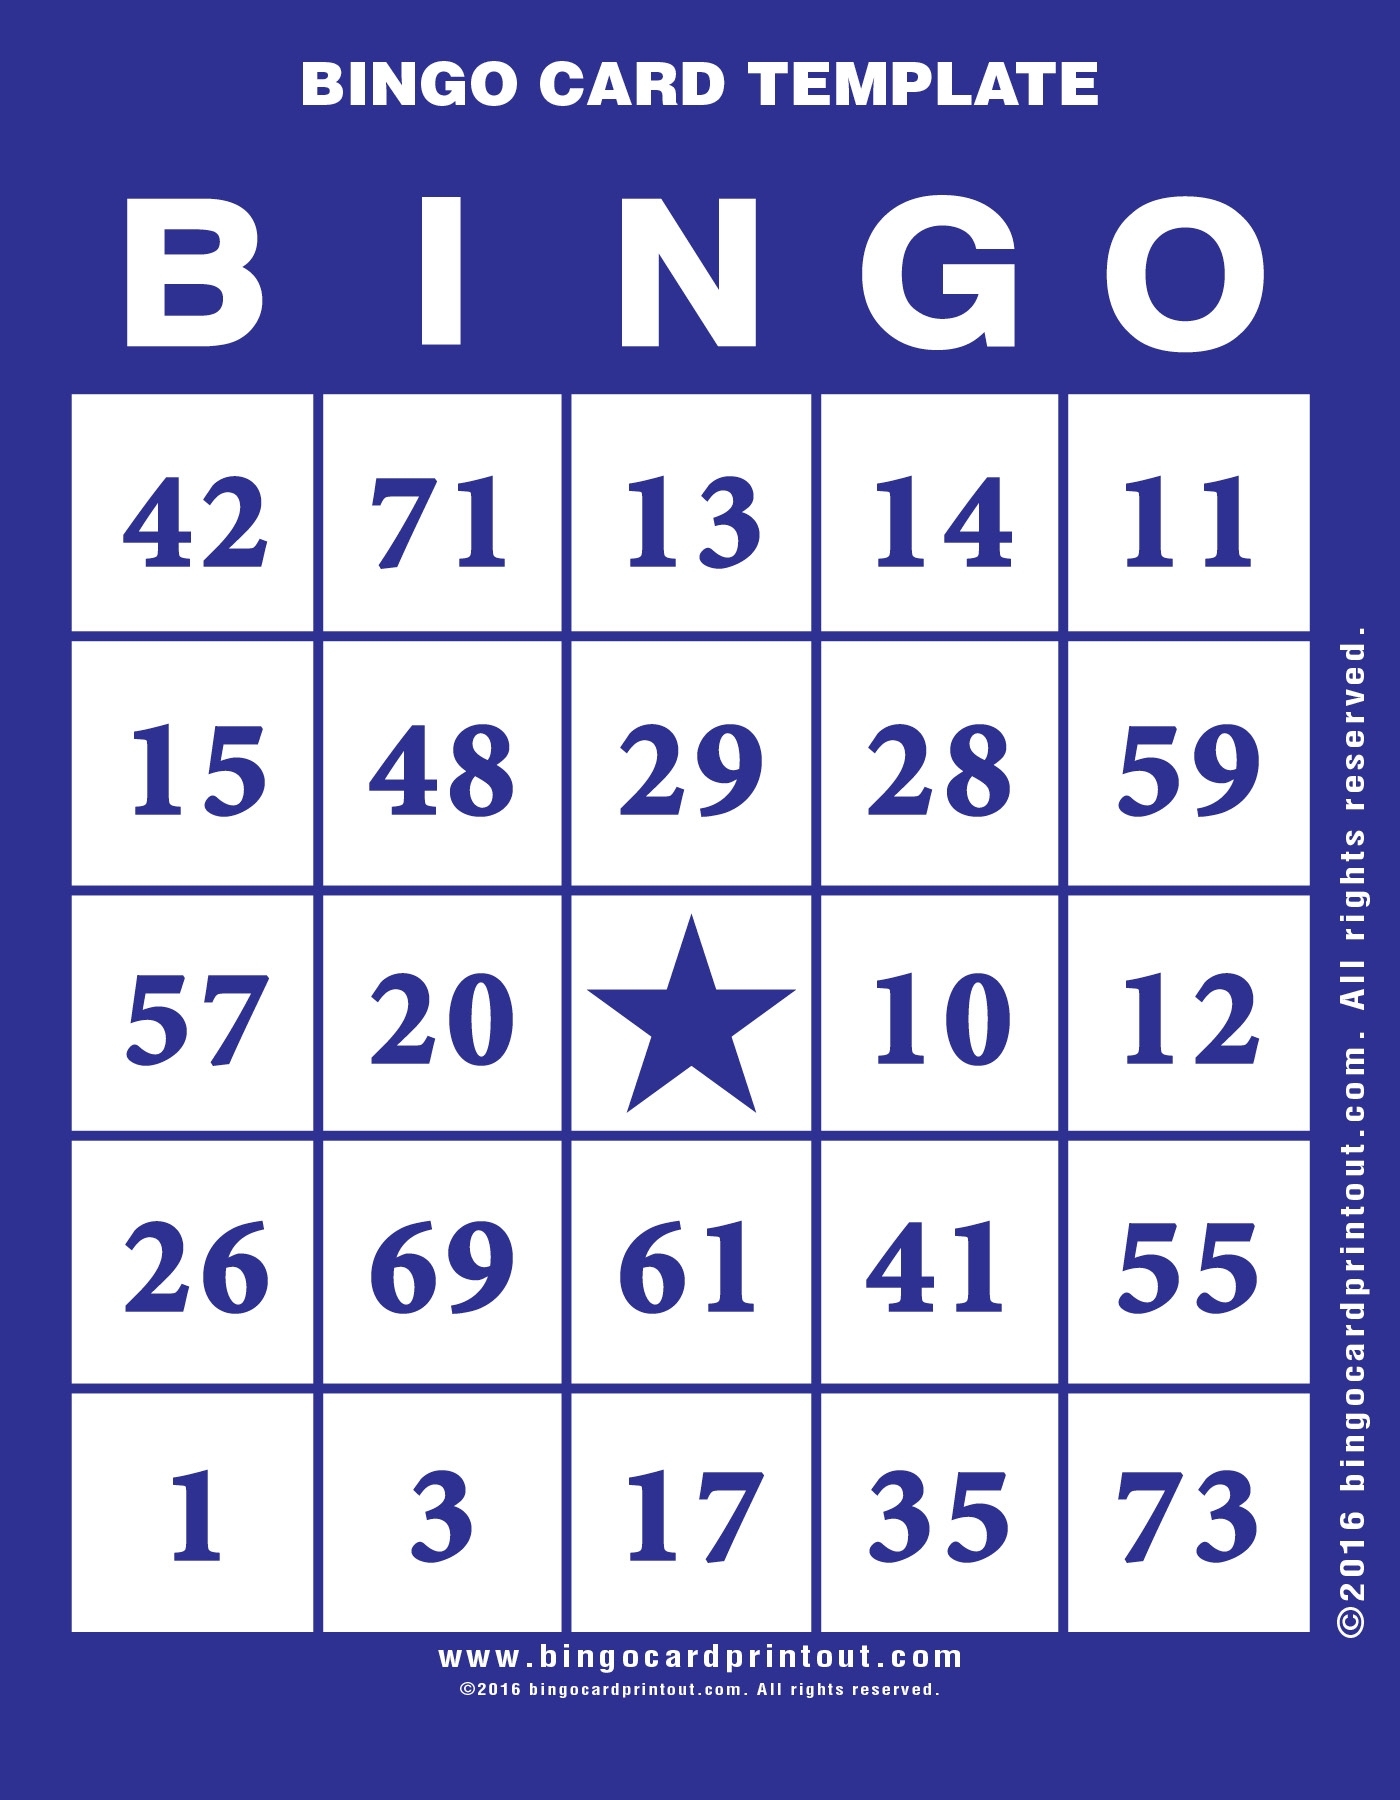 Bingo Card Template - Bingocardprintout with regard to Bingo Card Template Word